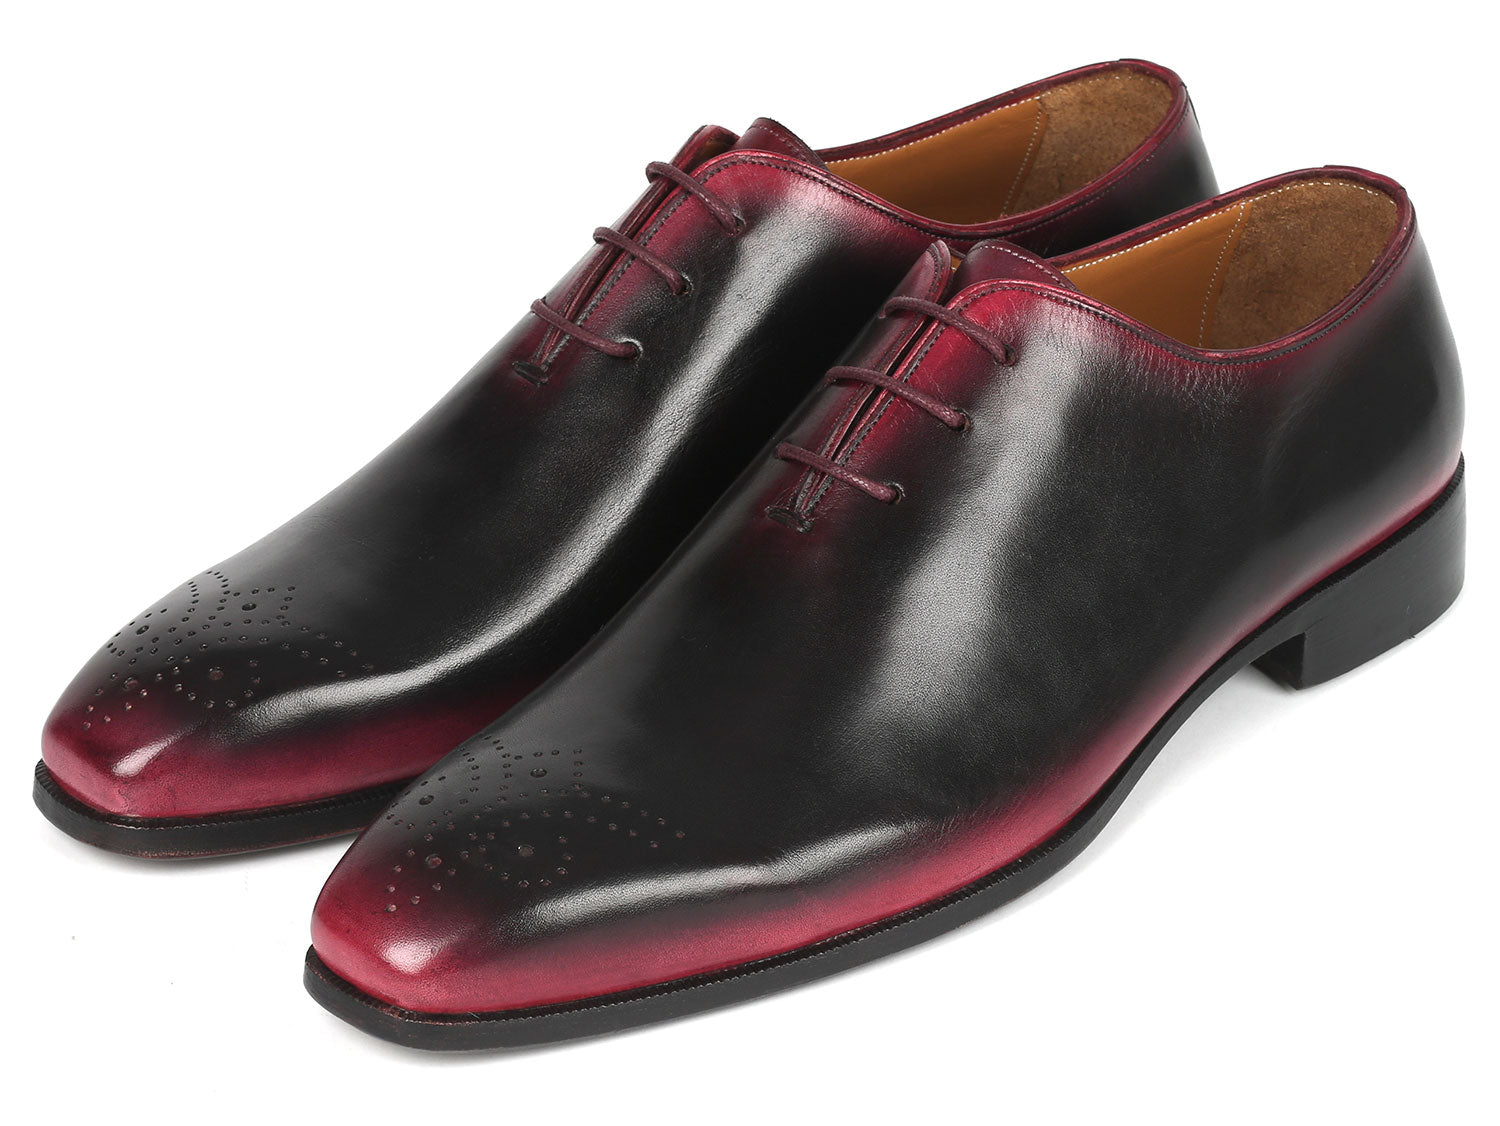 Paul Parkman Black & Red Men's Oxford Shoes - KR254-01-83